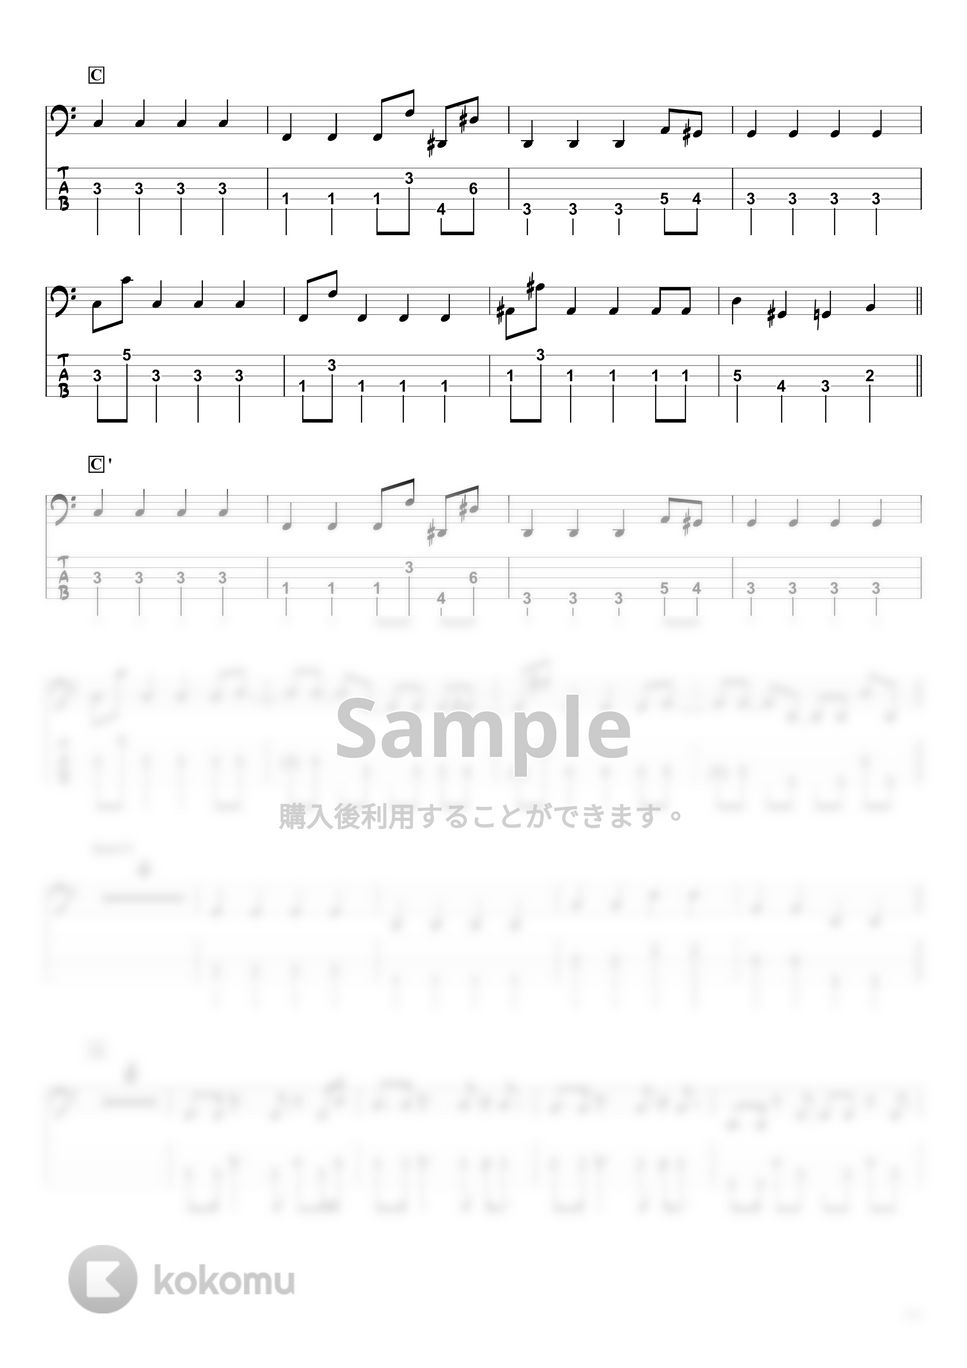 藤井 風 - grace (ベースTAB譜☆5弦ベース対応) by swbass